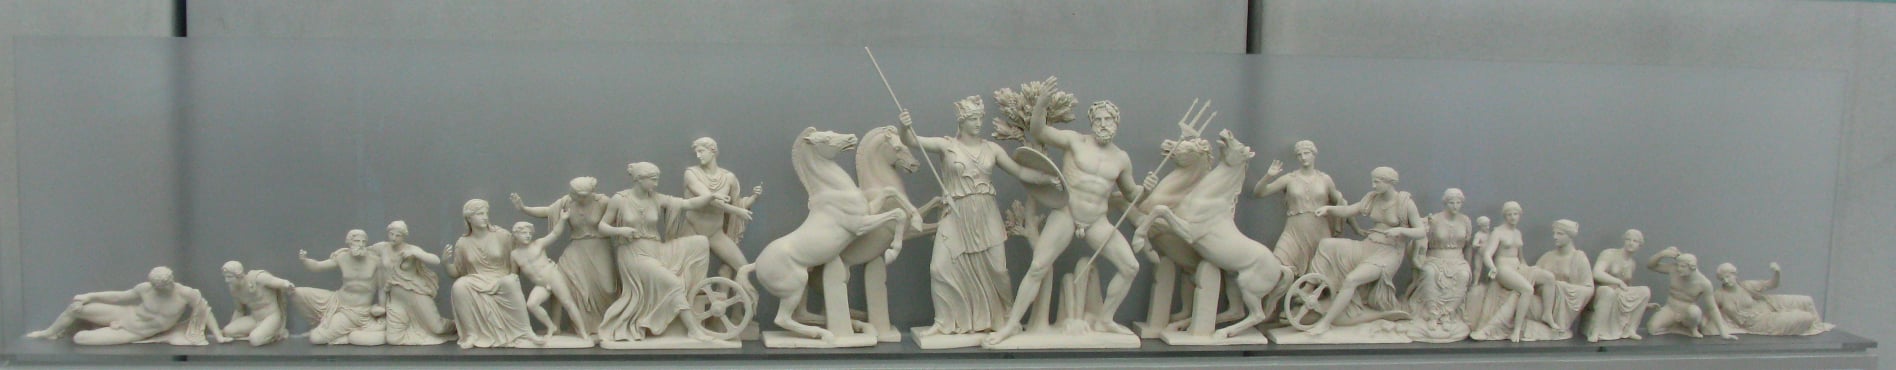 Figura 2. Atene, Museo dell'Acropoli. Ricostruzione del frontone Occidentale con la rappresentazione della contesa tra Atena e Poseidone. Al centro è l'ulivo